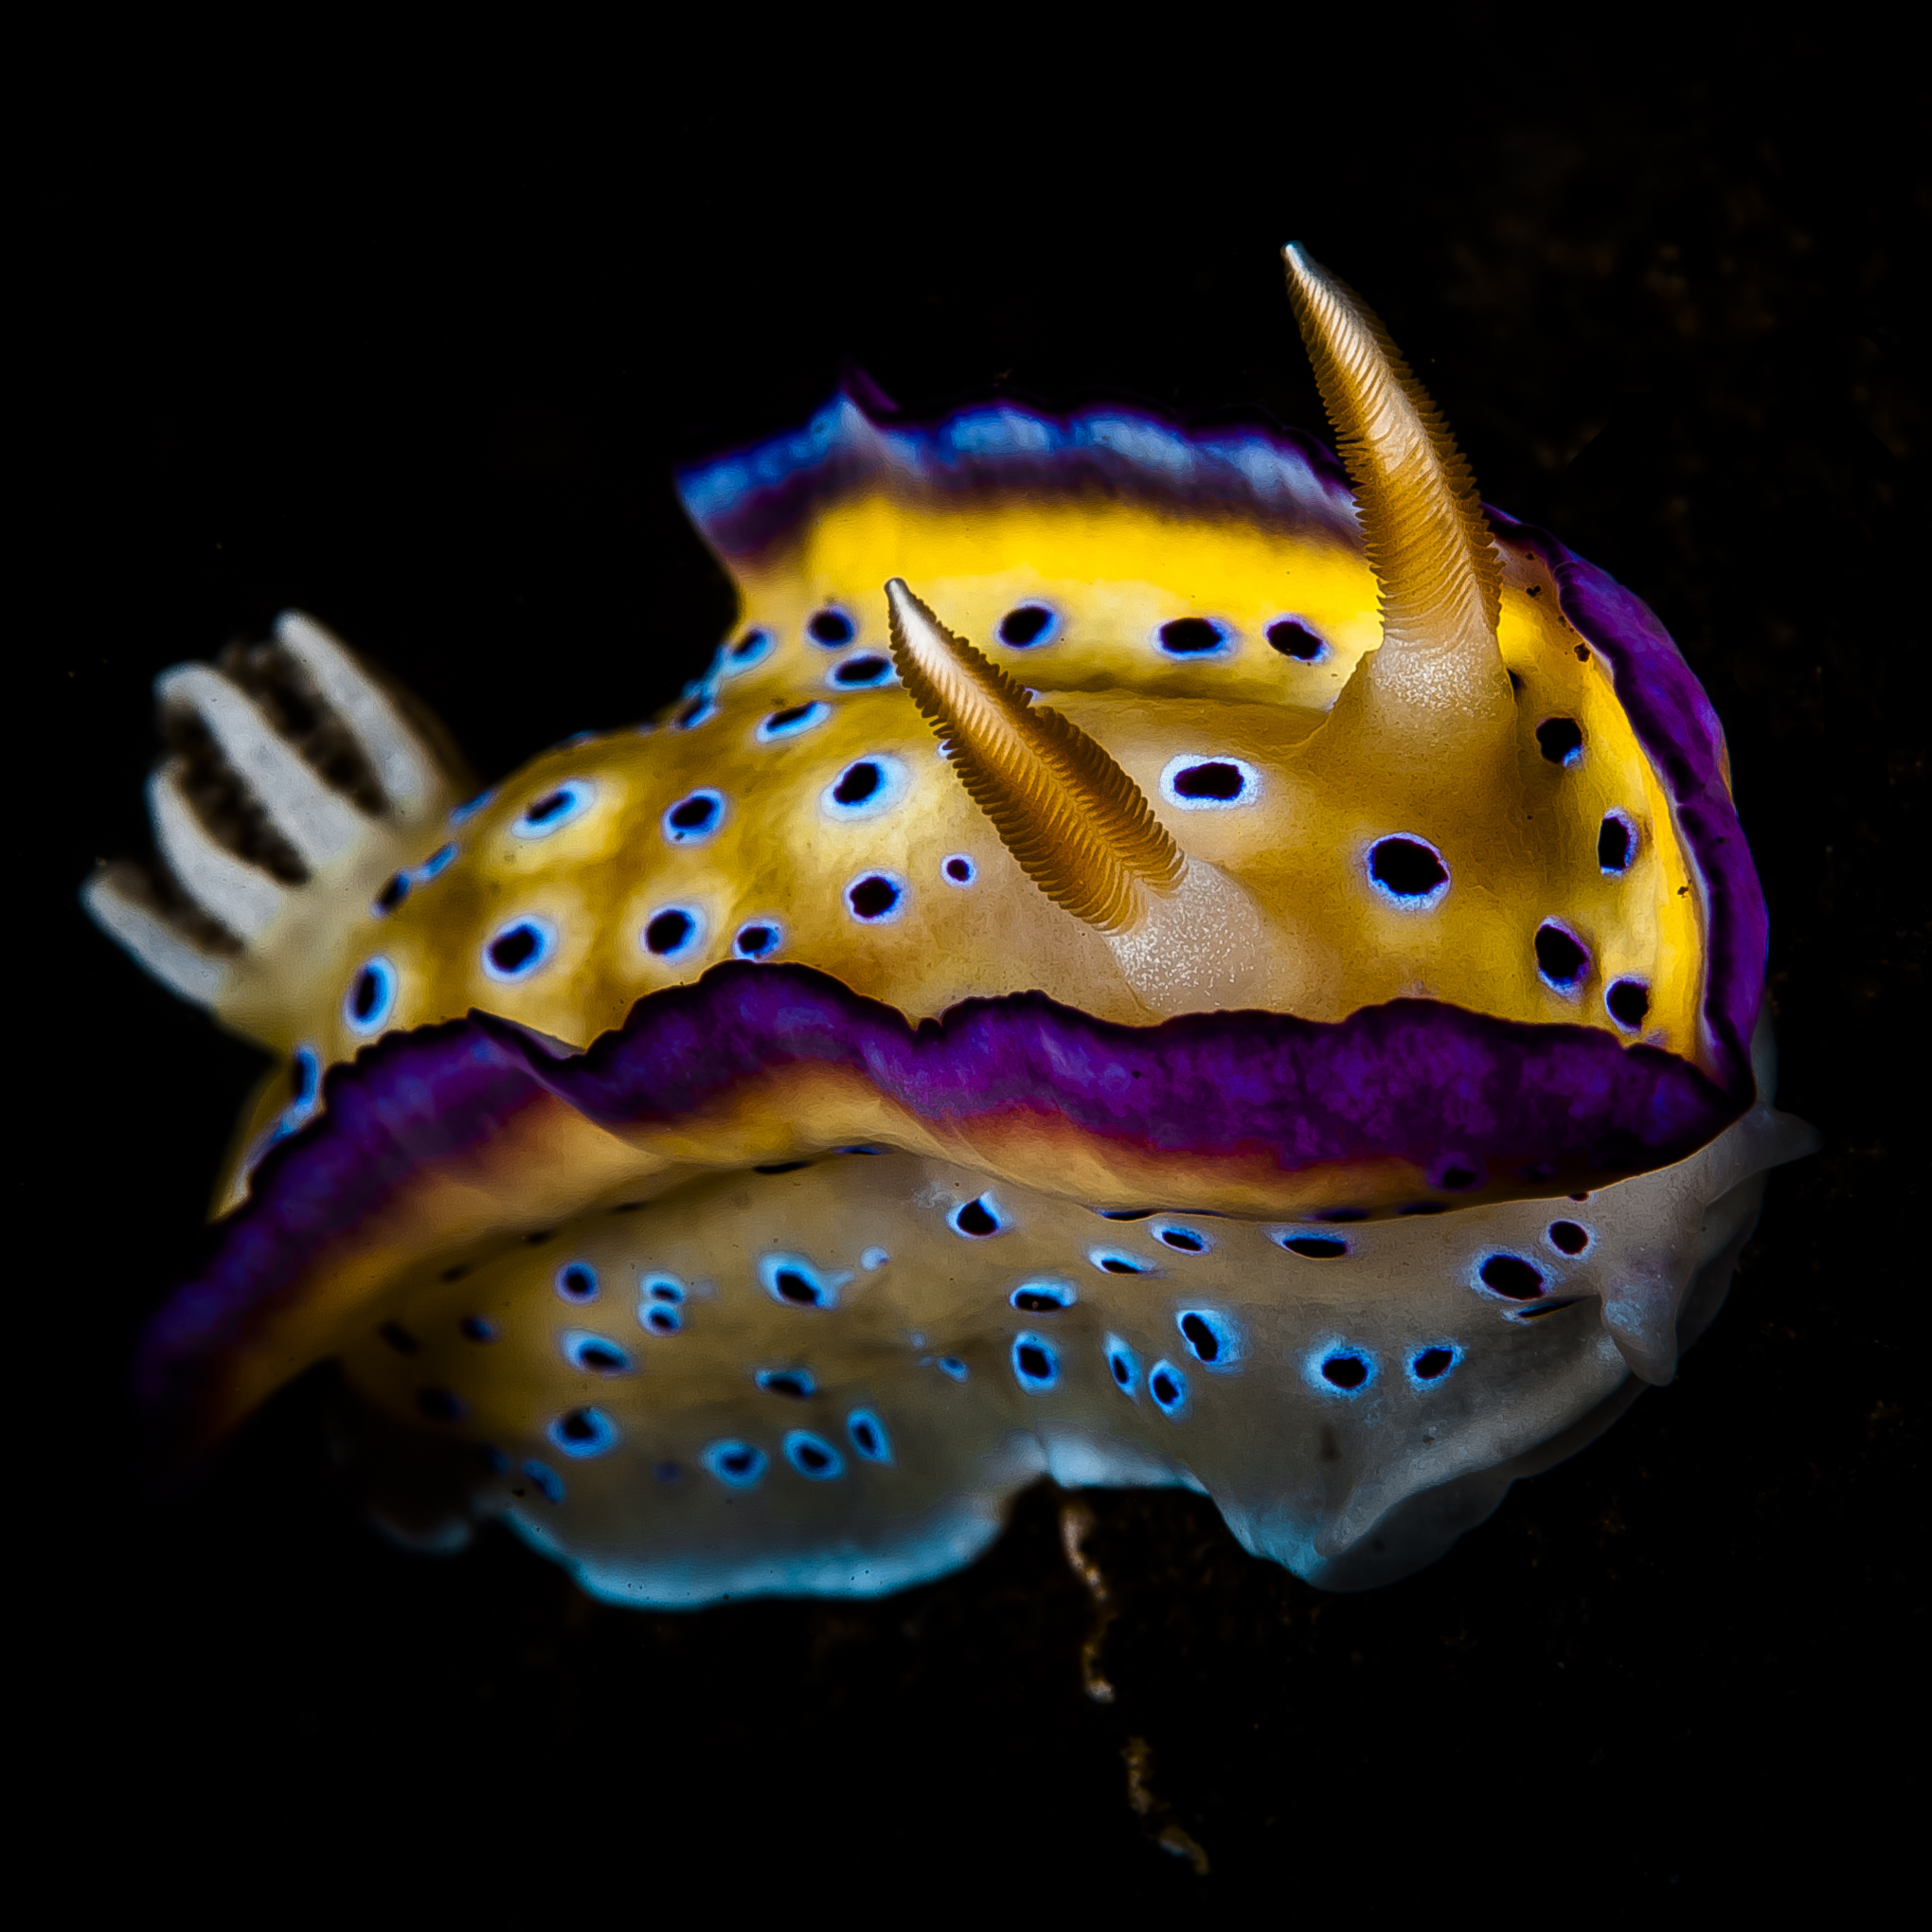 ‘Nudibranch Hunter’ Bagikan Gambar Siput Laut Indonesia yang Penuh Warna dan Unik